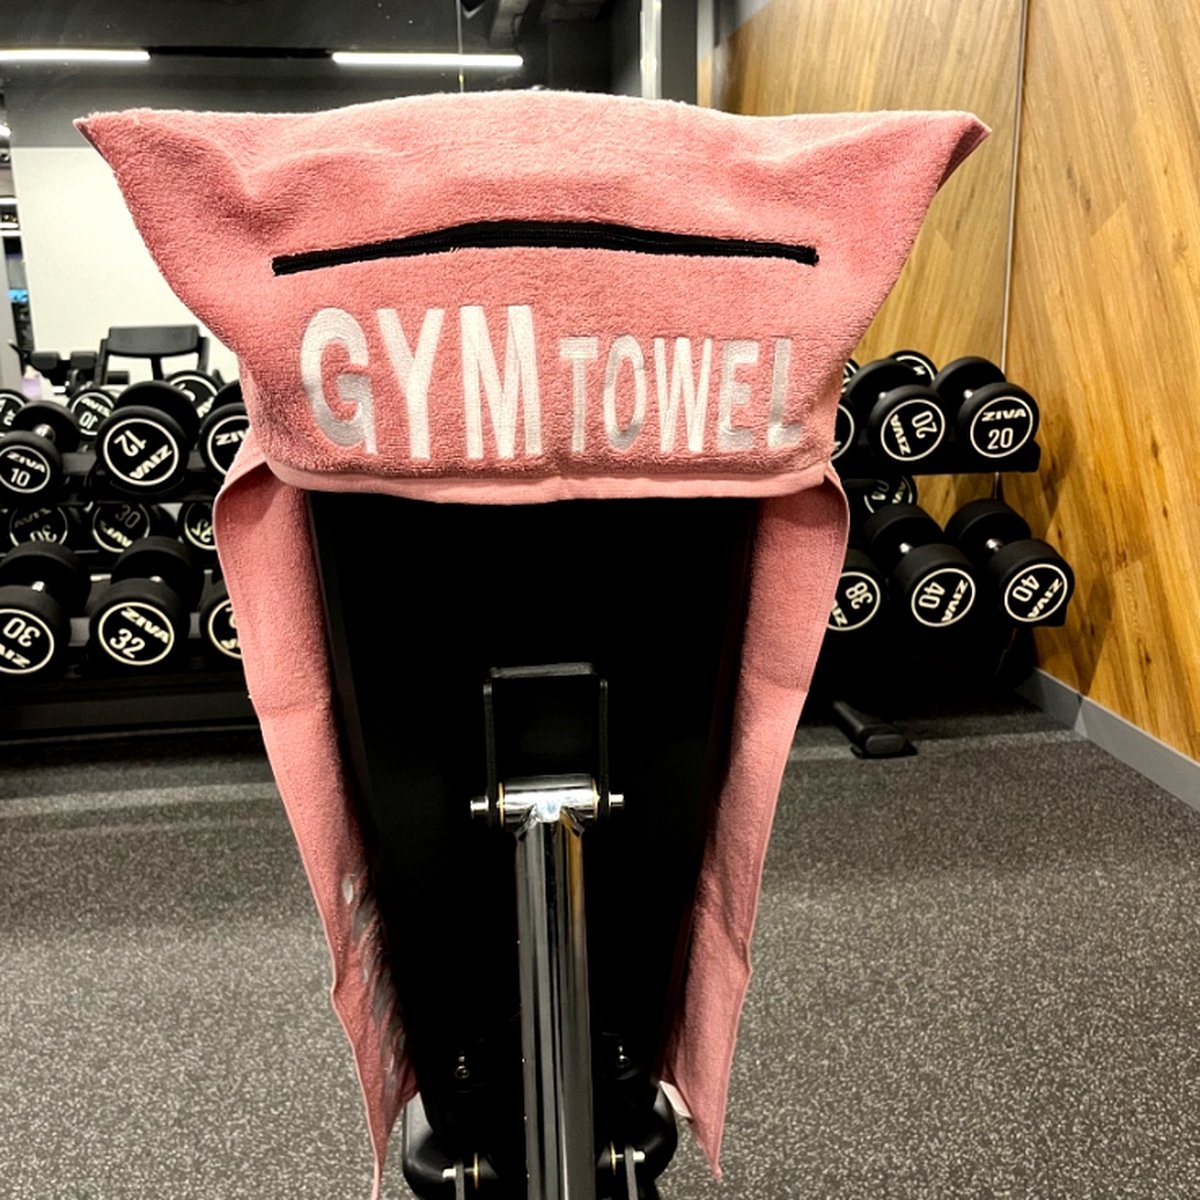 Gym Towel - Fitness handdoek - Sporthanddoek - Opbergvak - Rits - Roze - Lioninside